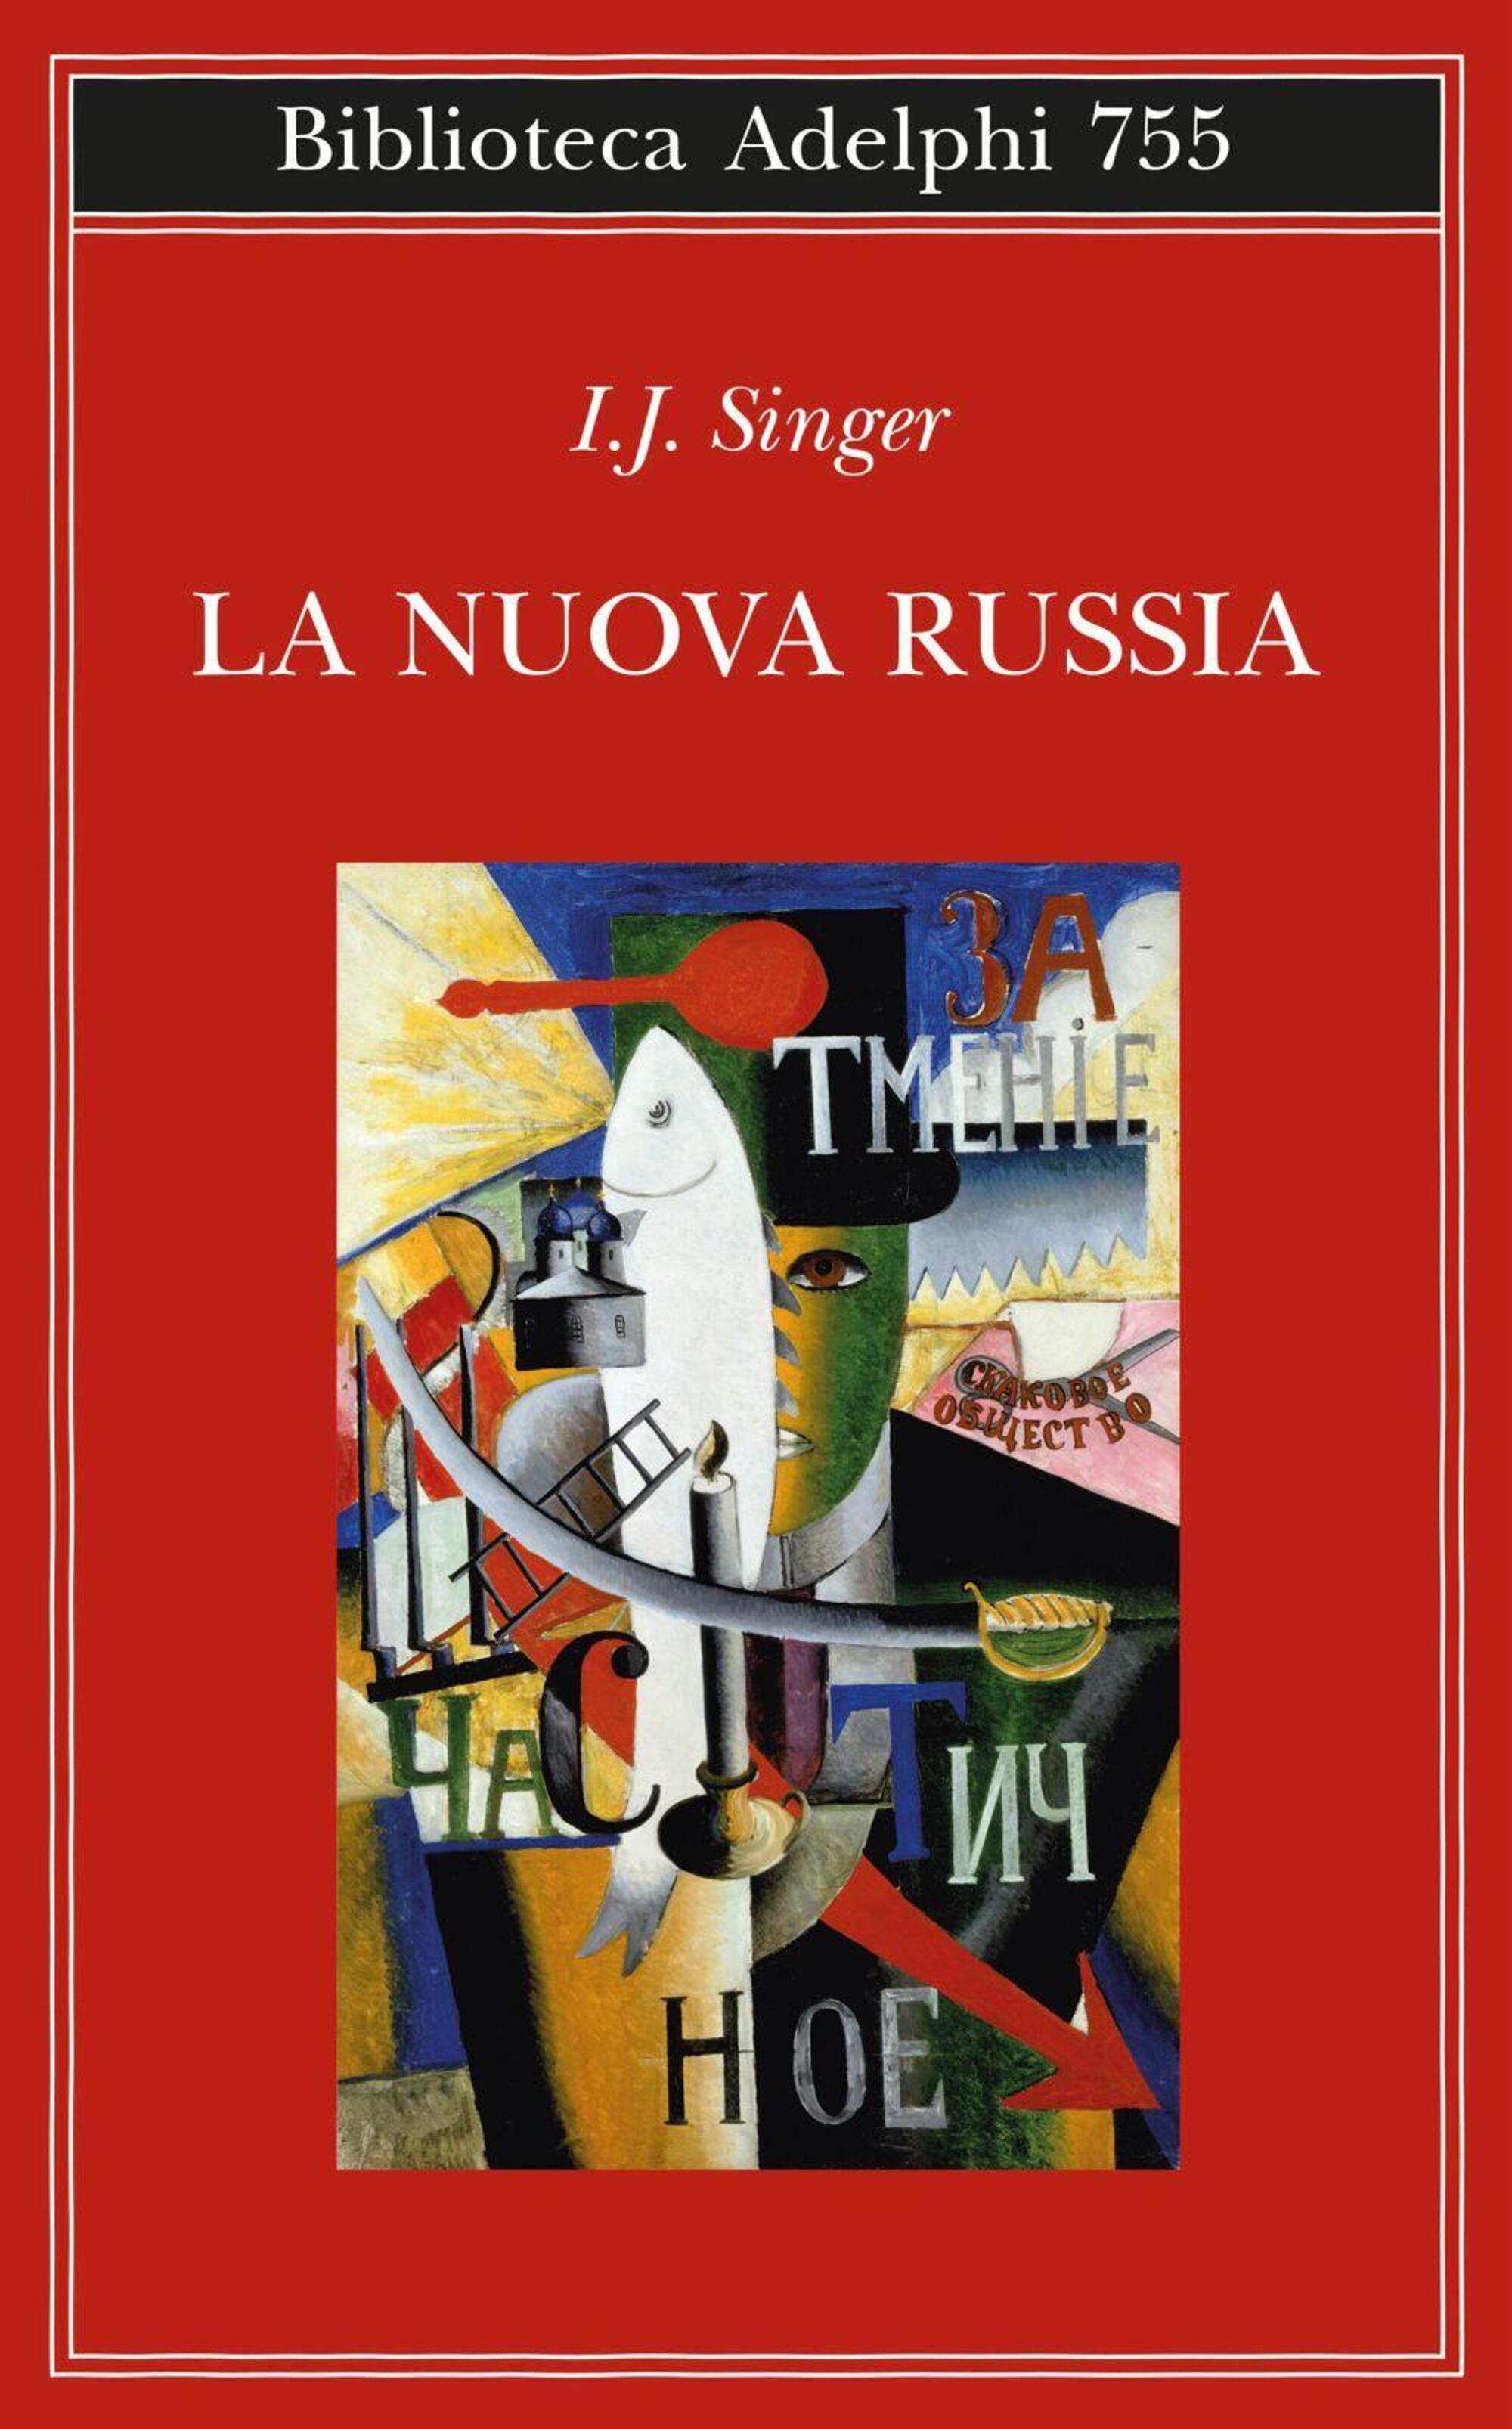 Copertina de &ldquo;La nuova Russia&rdquo; di Israel J. Singer (Adelphi) con il dipinto &ldquo;Un inglese a Mosca&rdquo; di Kazimir Malevich